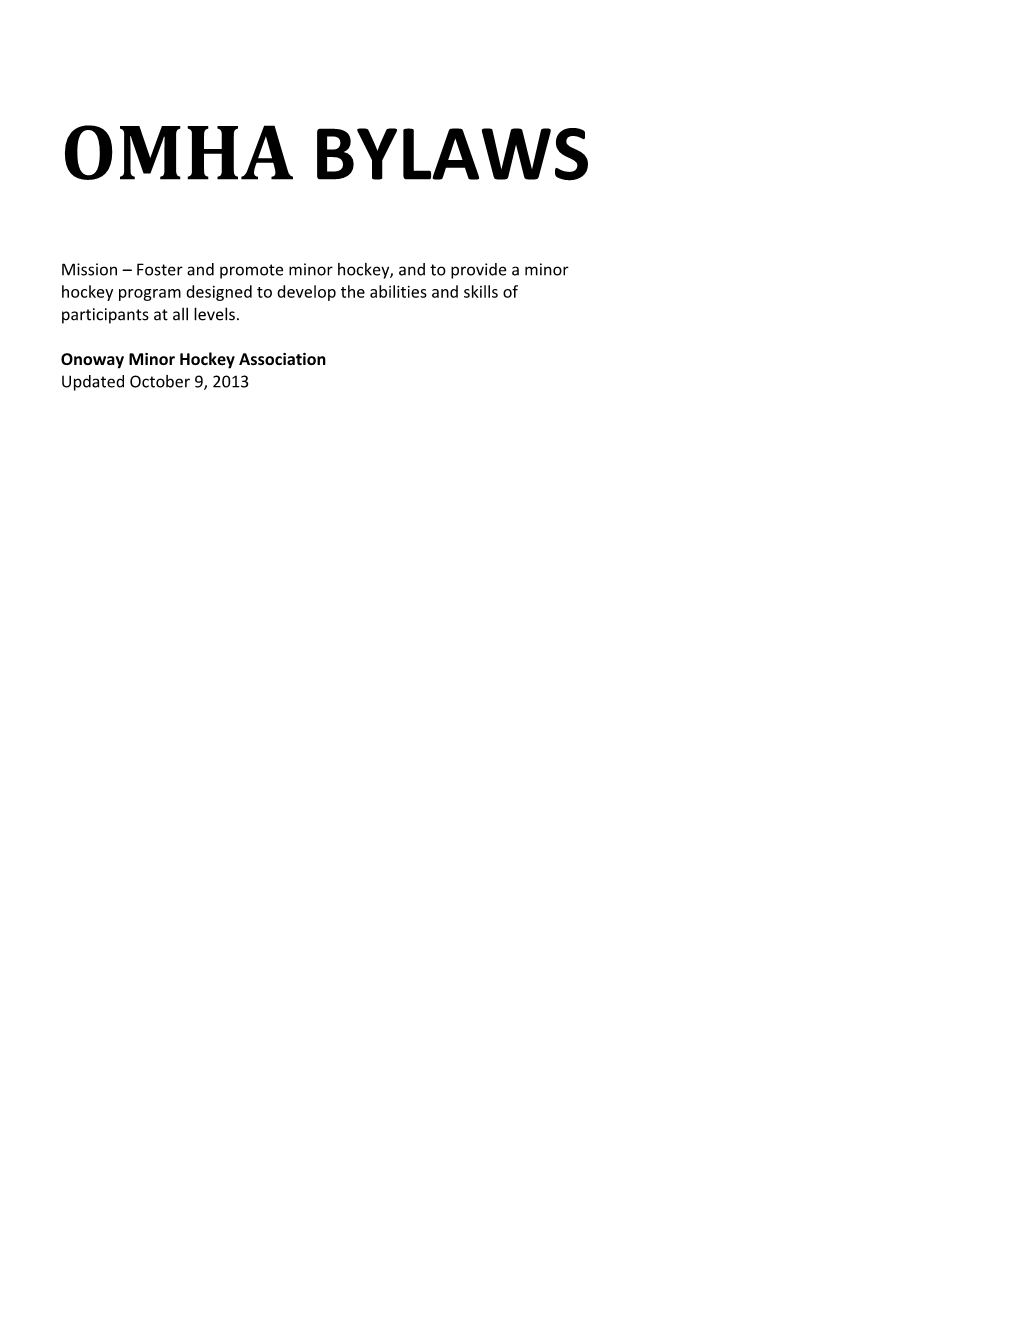 Onoway Minor Hockey Association Bylaws